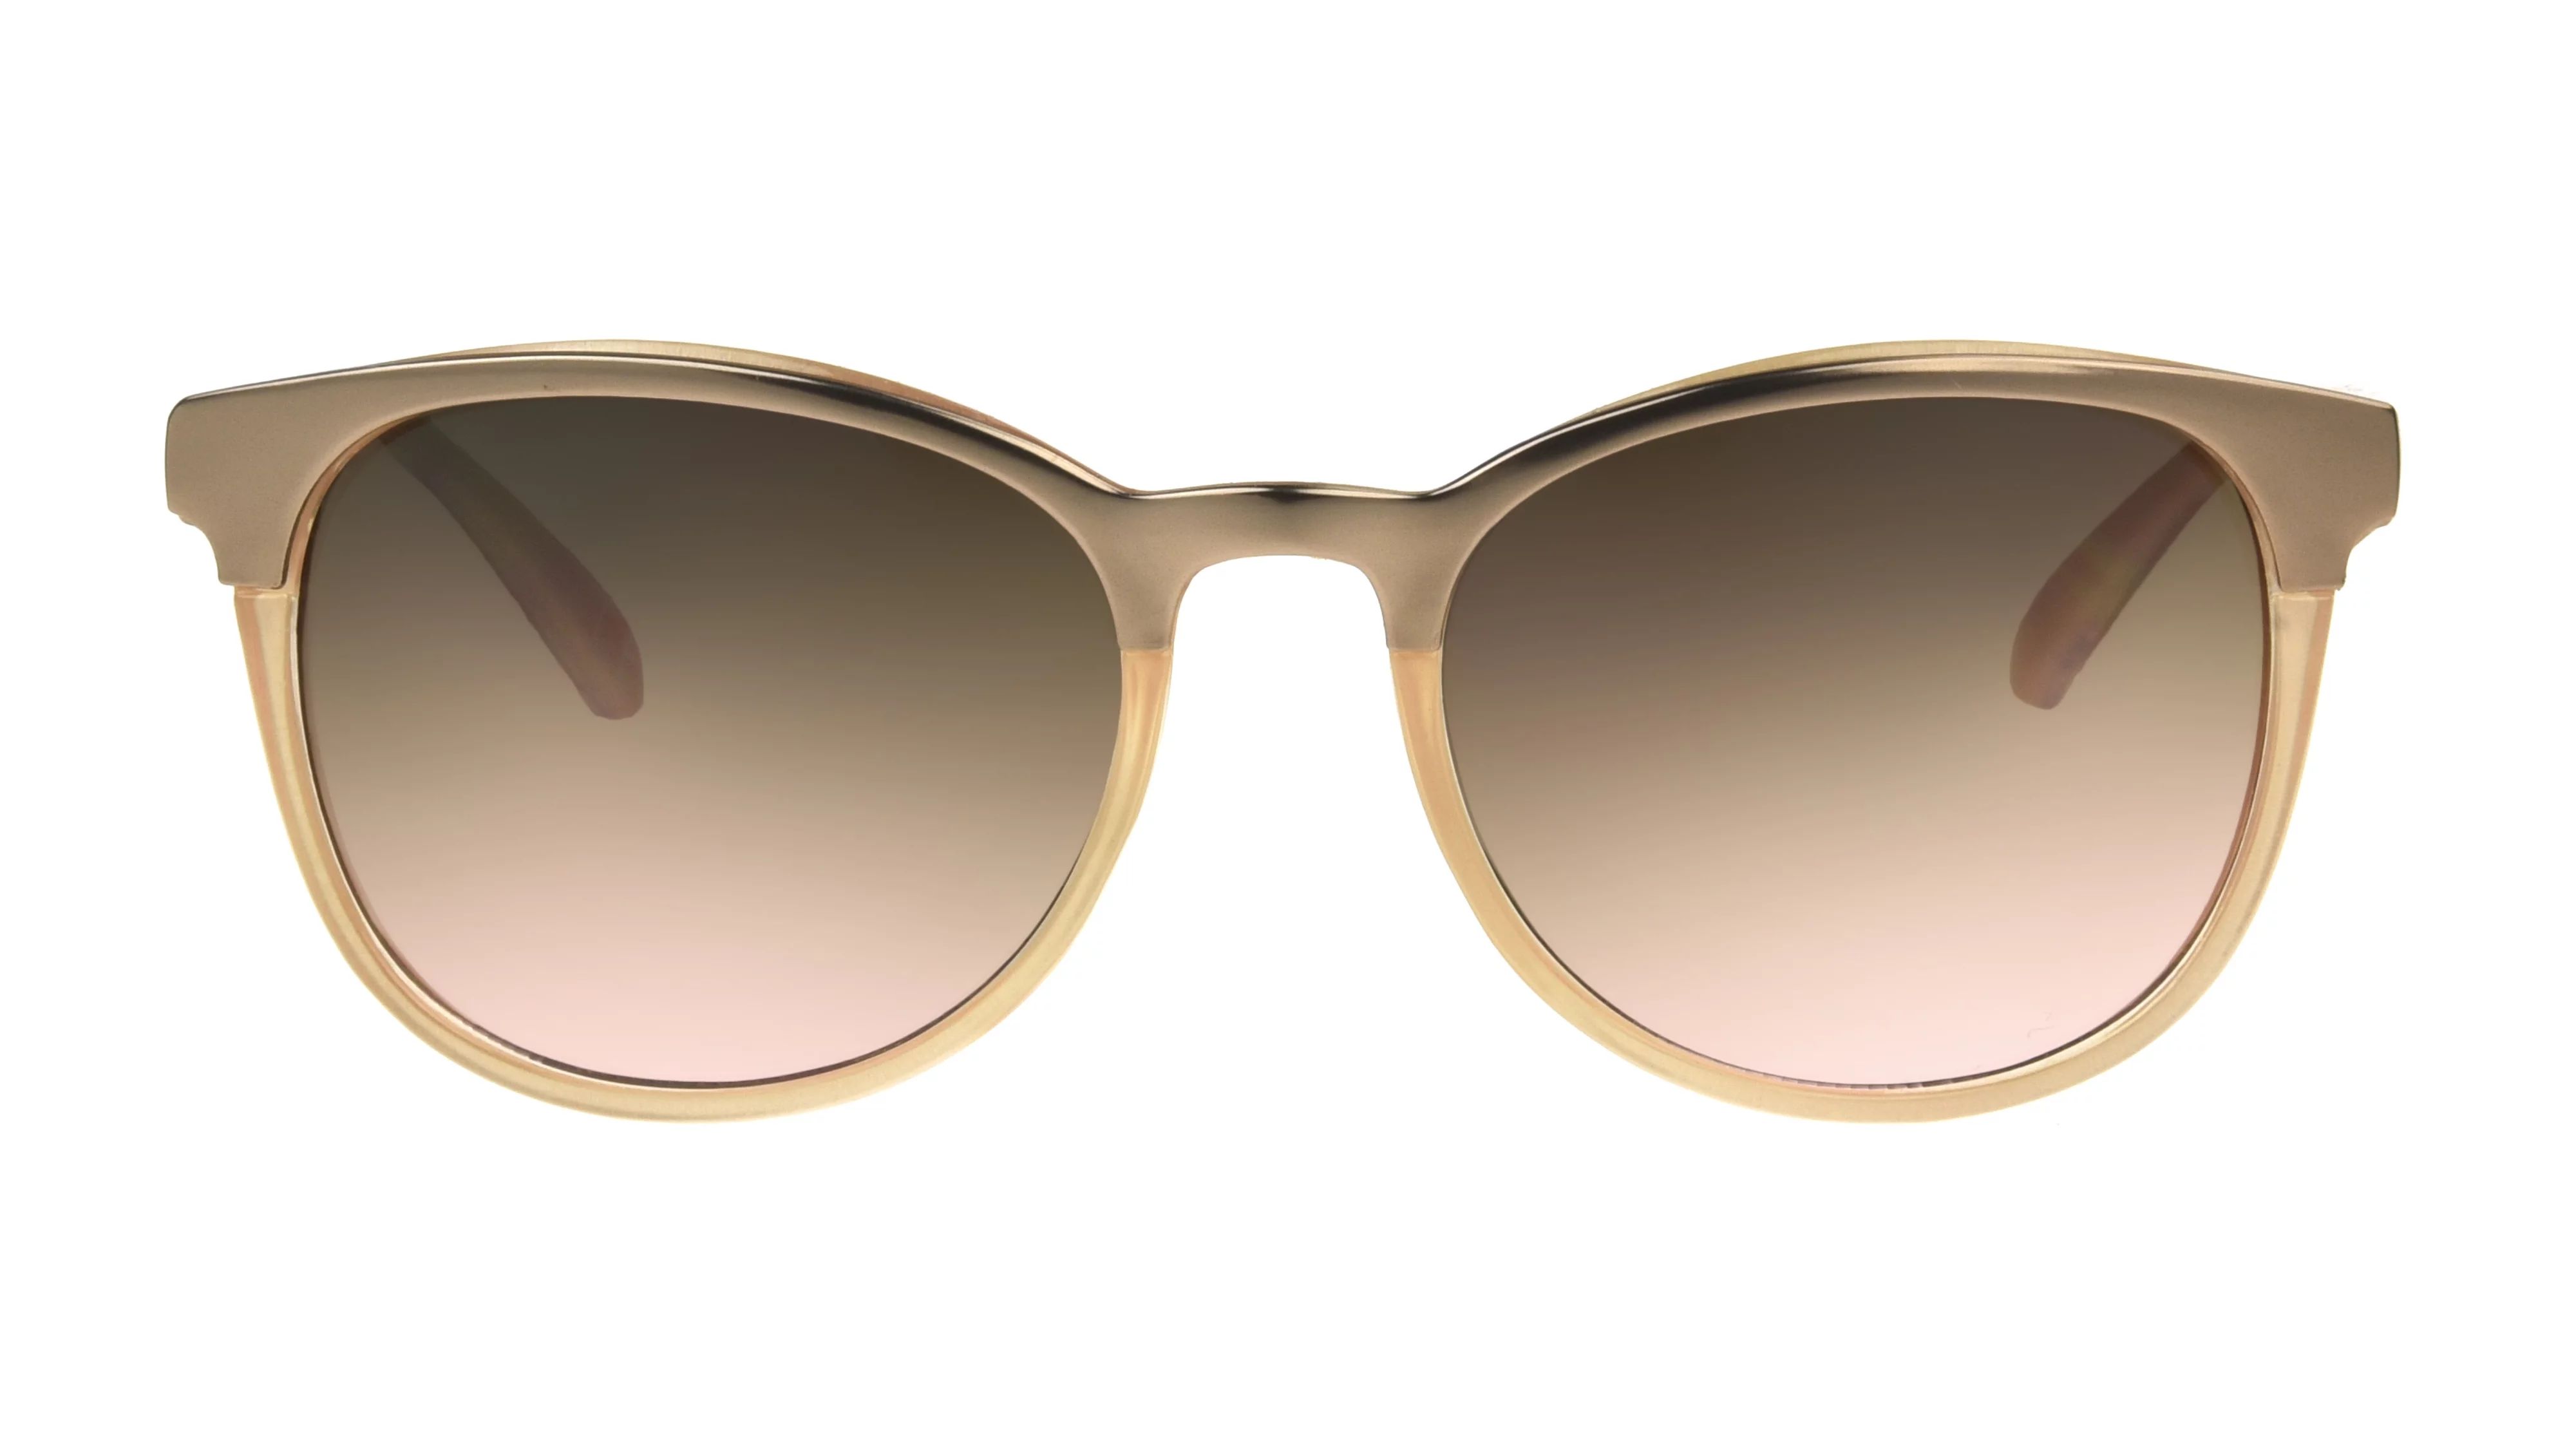 Foster Grant Women's Coquette Fashion Sunglasses Rose Gold | Walmart (US)